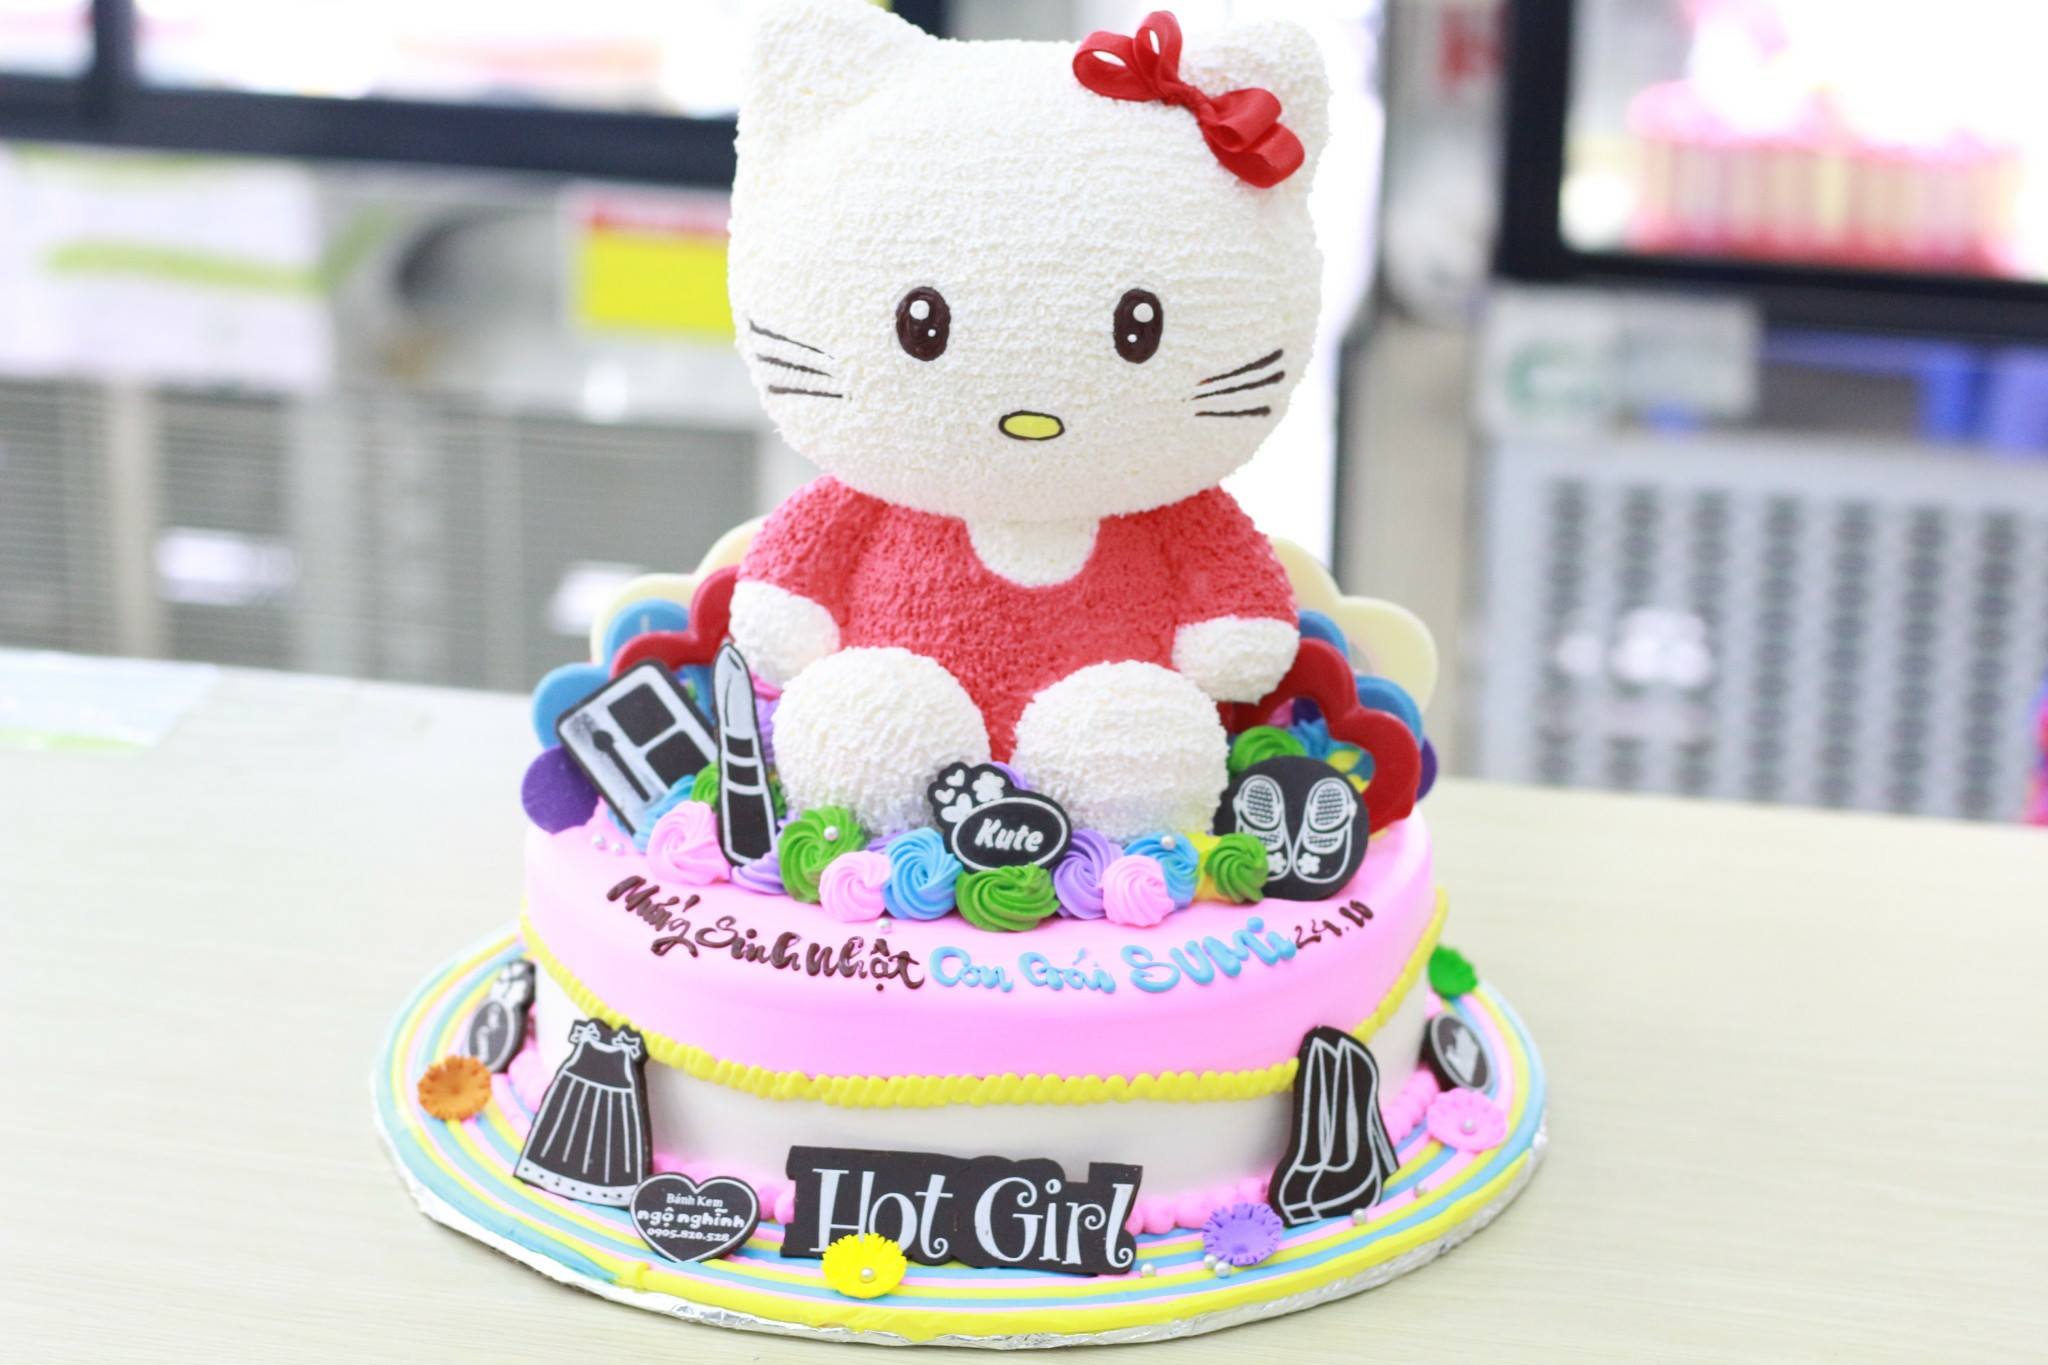 Bánh sinh nhật tạo hình mèo Hello Kitty thật sự là một món quà đặc biệt không chỉ cho trẻ em mà cả người lớn. Với sự kết hợp tinh tế giữa cách làm bánh của các chuyên gia và hình ảnh dễ thương của Hello Kitty, đây chắc chắn sẽ là món quà tuyệt vời nhất mà bạn có thể dành tặng cho người thân của mình!